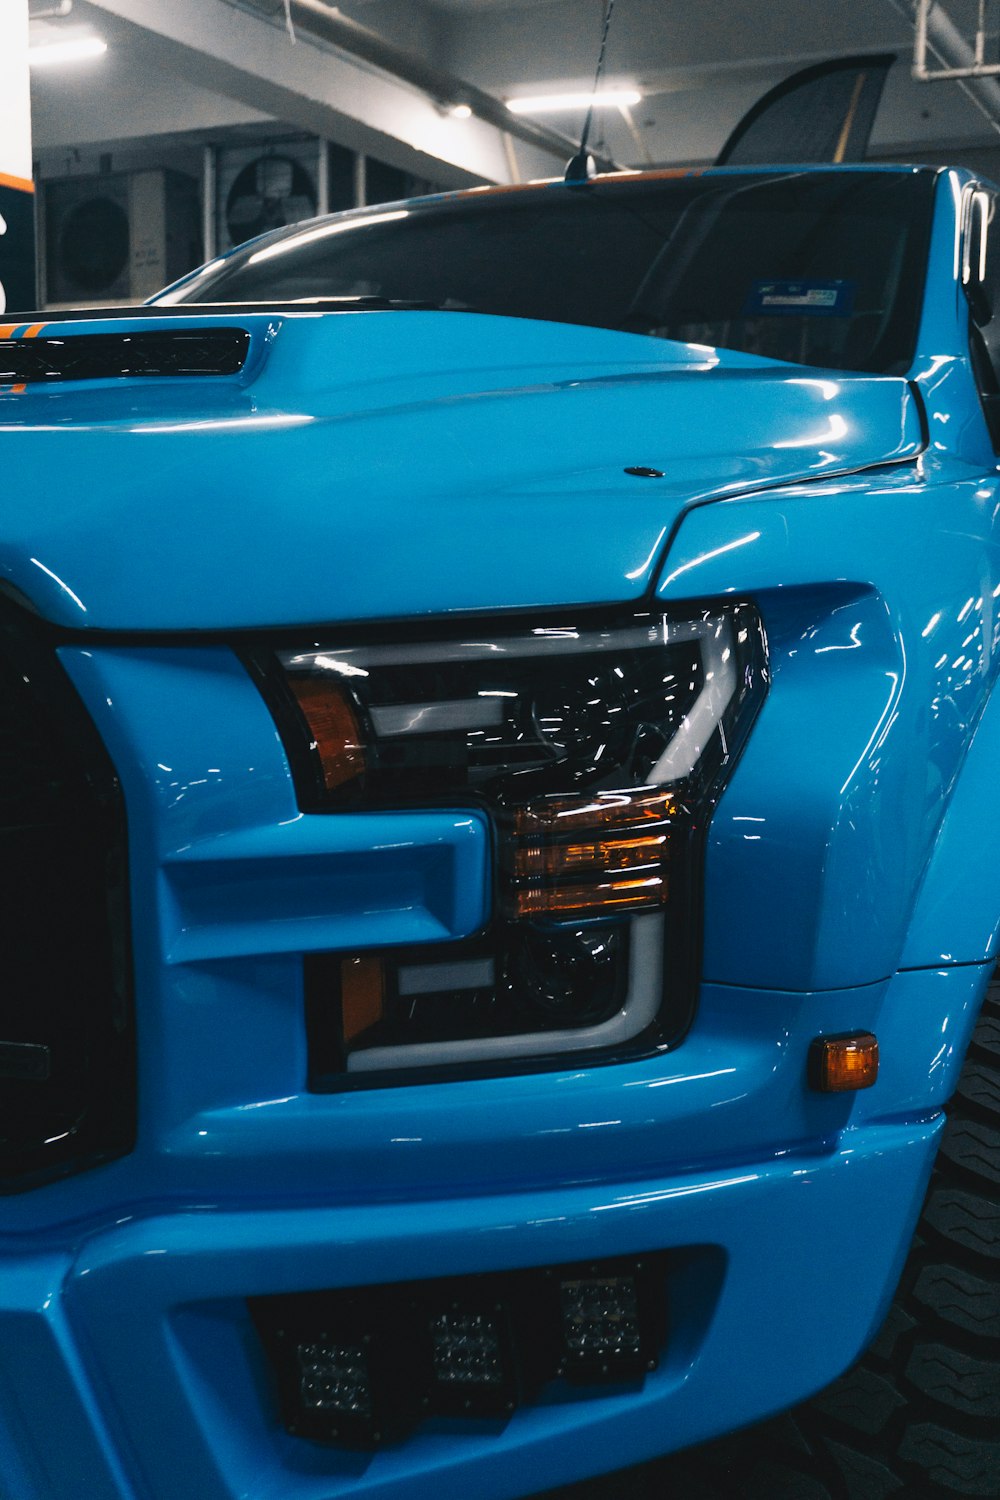 Un camion bleu est garé dans un garage